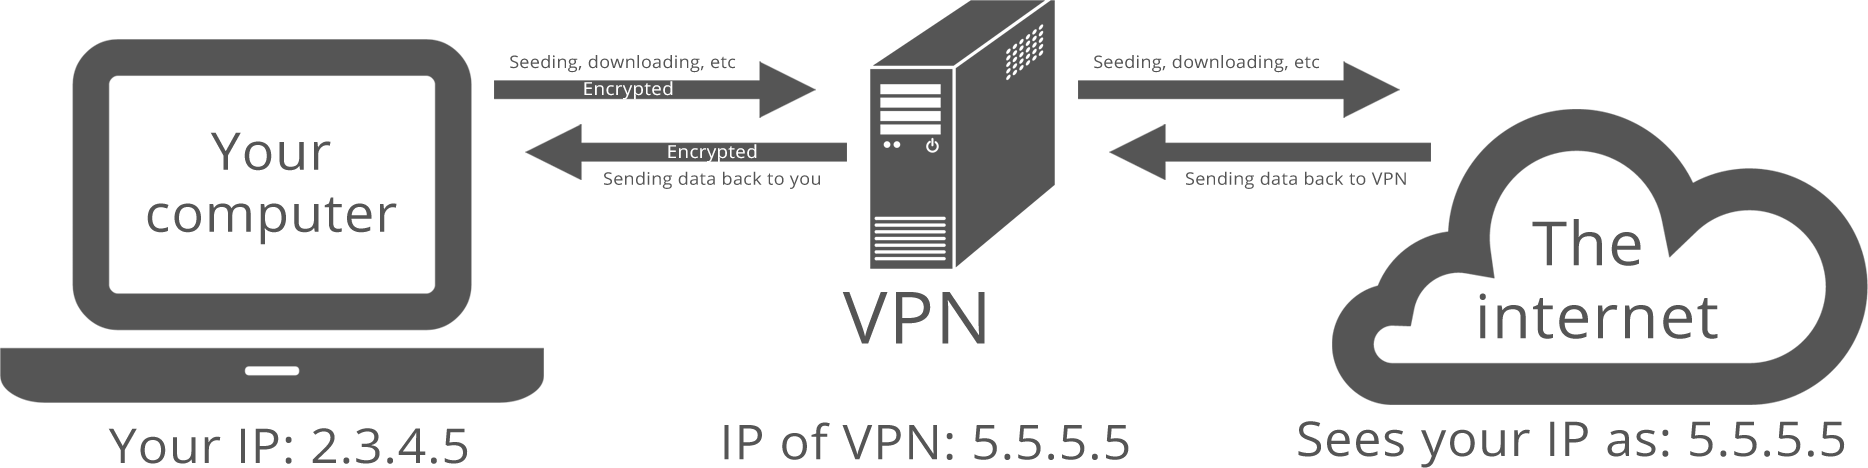 Схема работы VPN туннеля